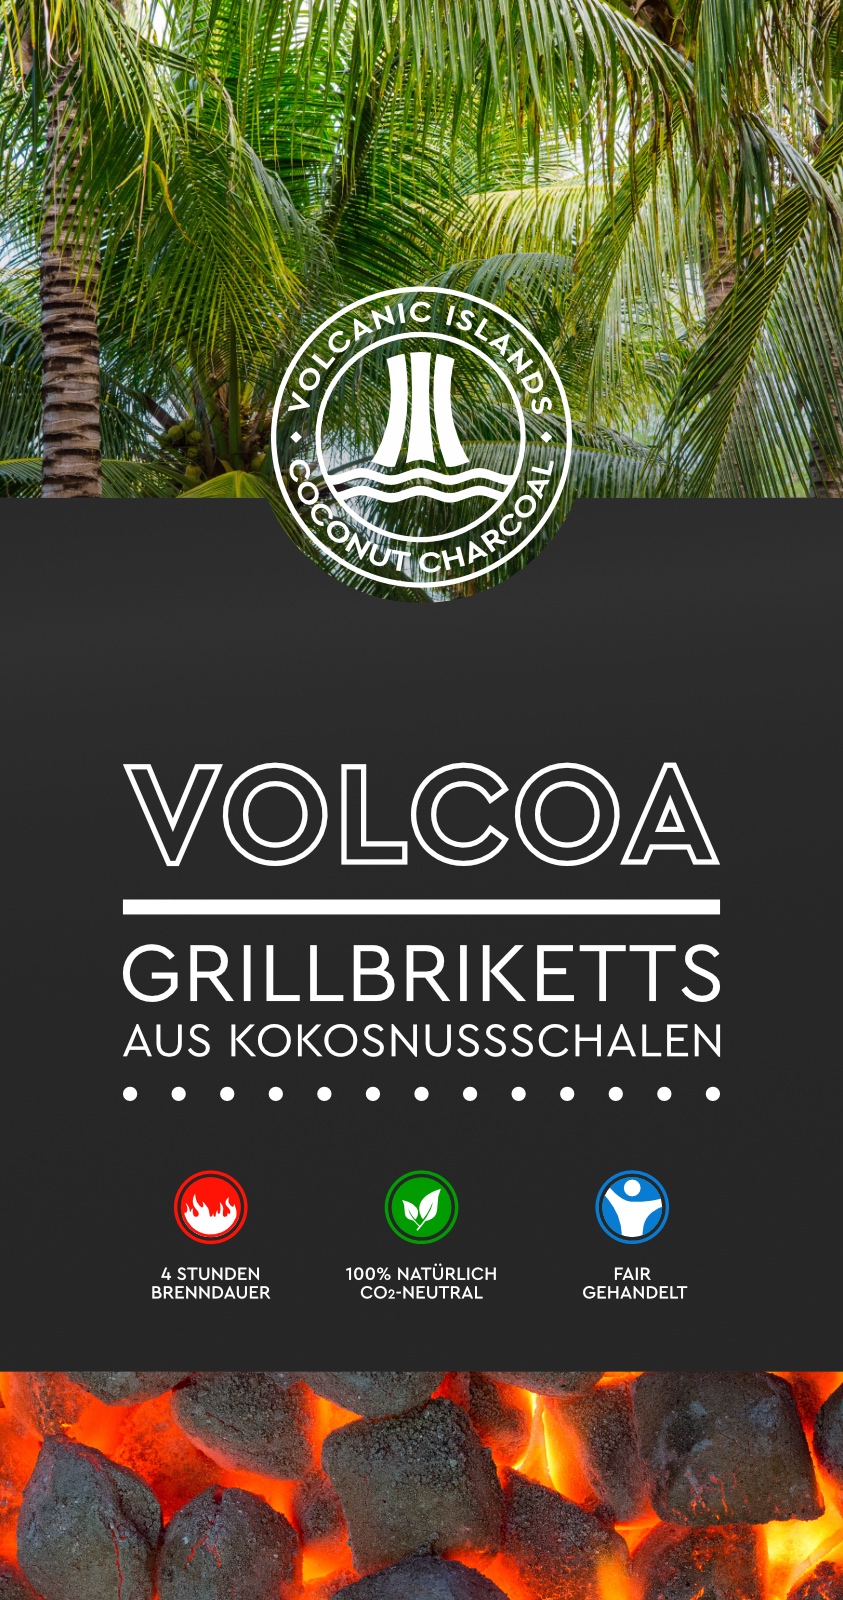 VOLCOA Grillbriketts aus Kokosnussschalen